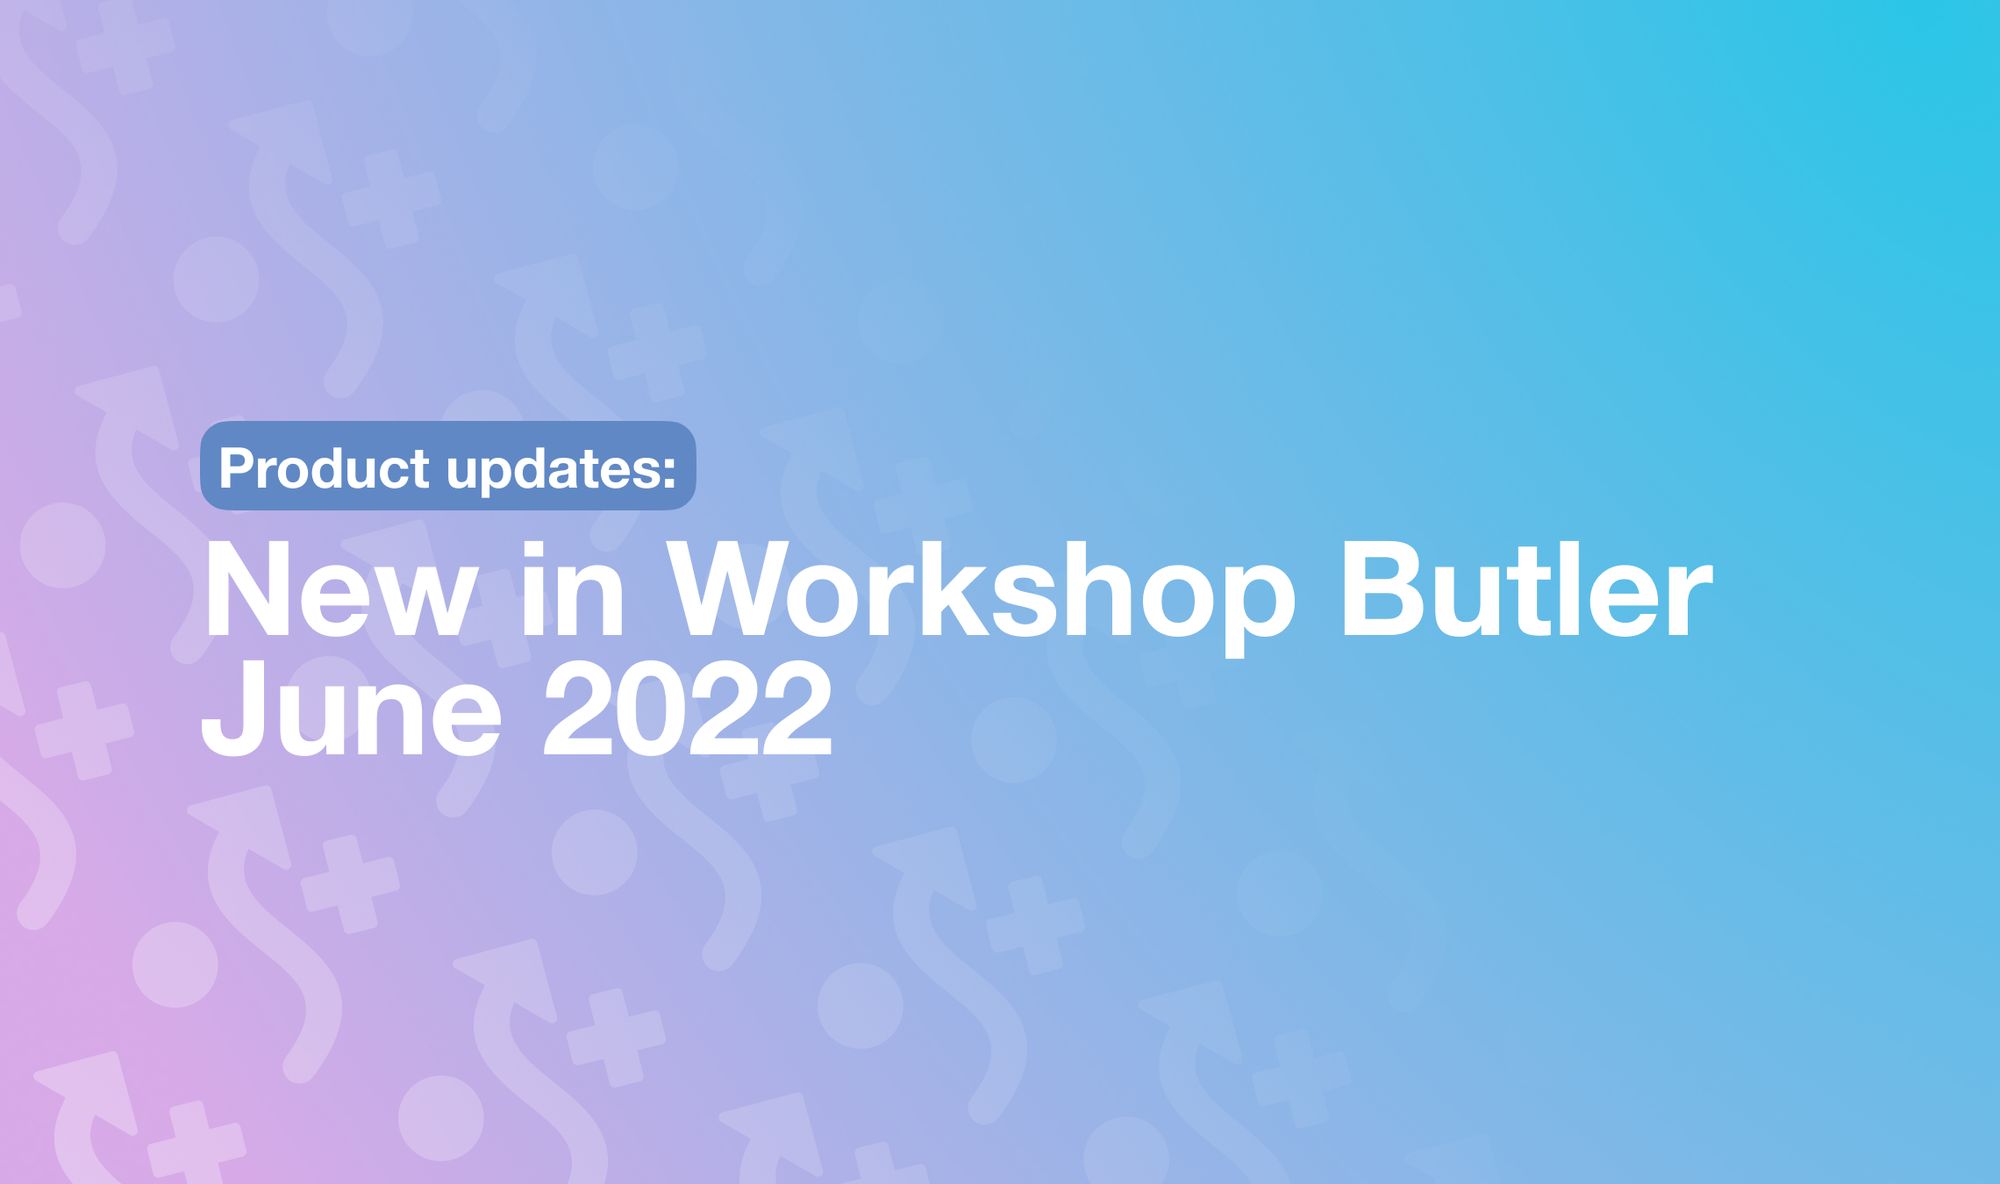 New in Workshop Butler Jun 2022